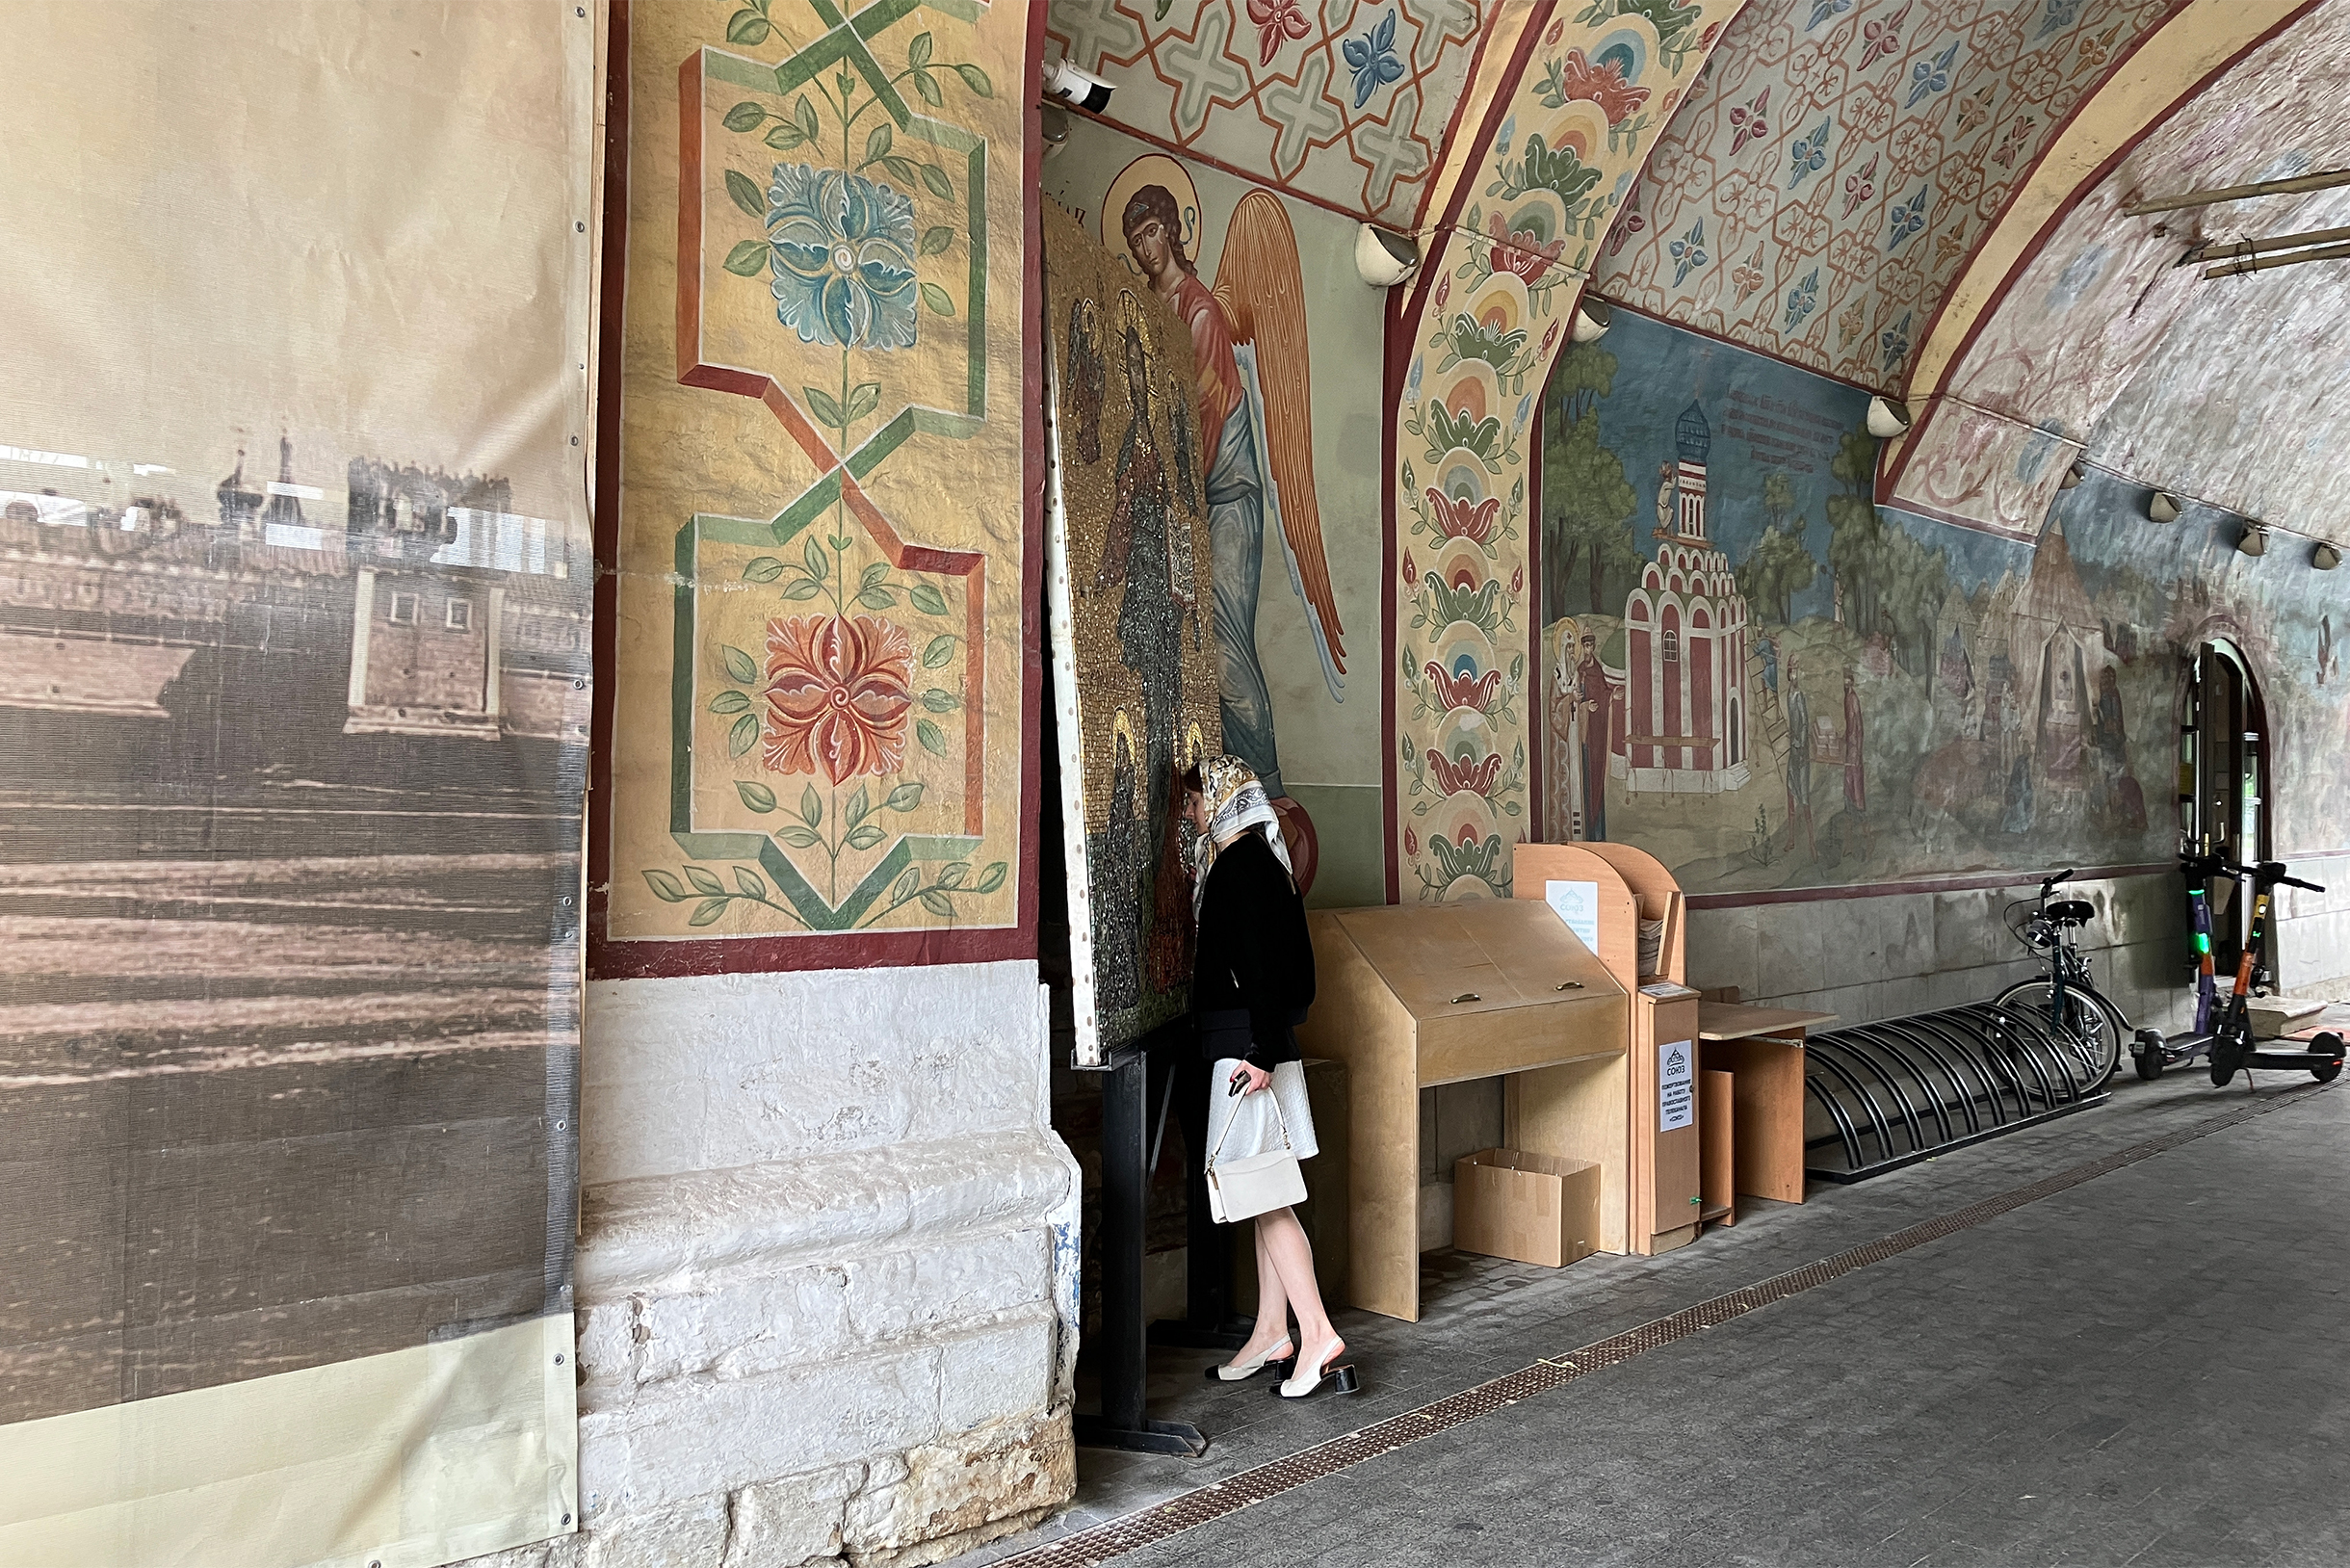 Сквер у Донского монастыря — одно из наших любимых мест отдыха